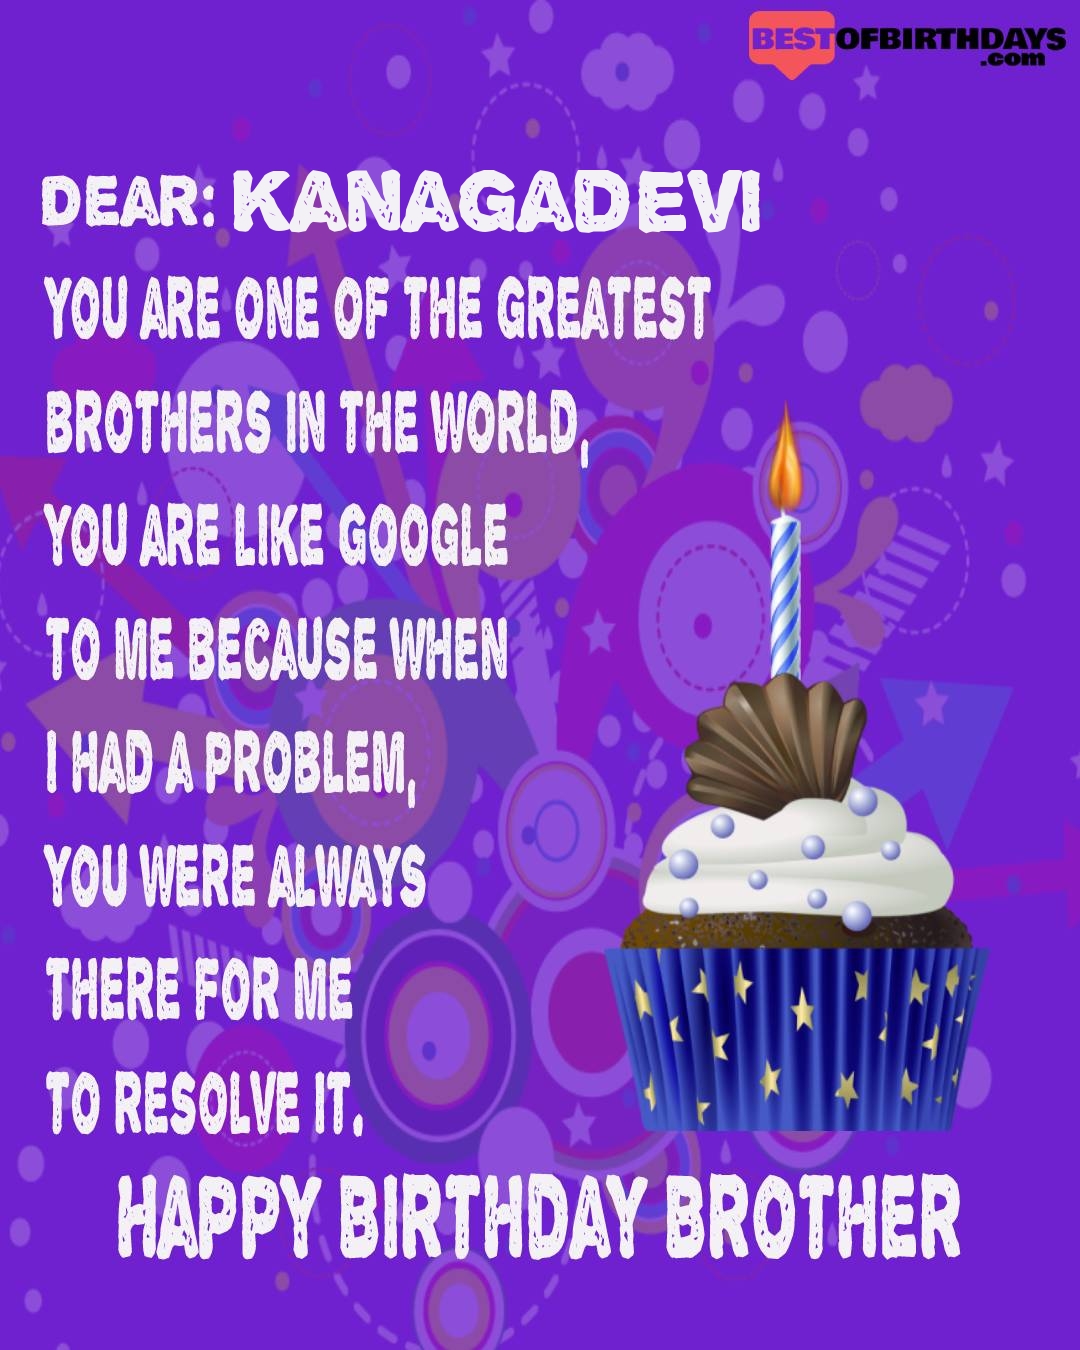 Happy birthday kanagadevi bhai brother bro